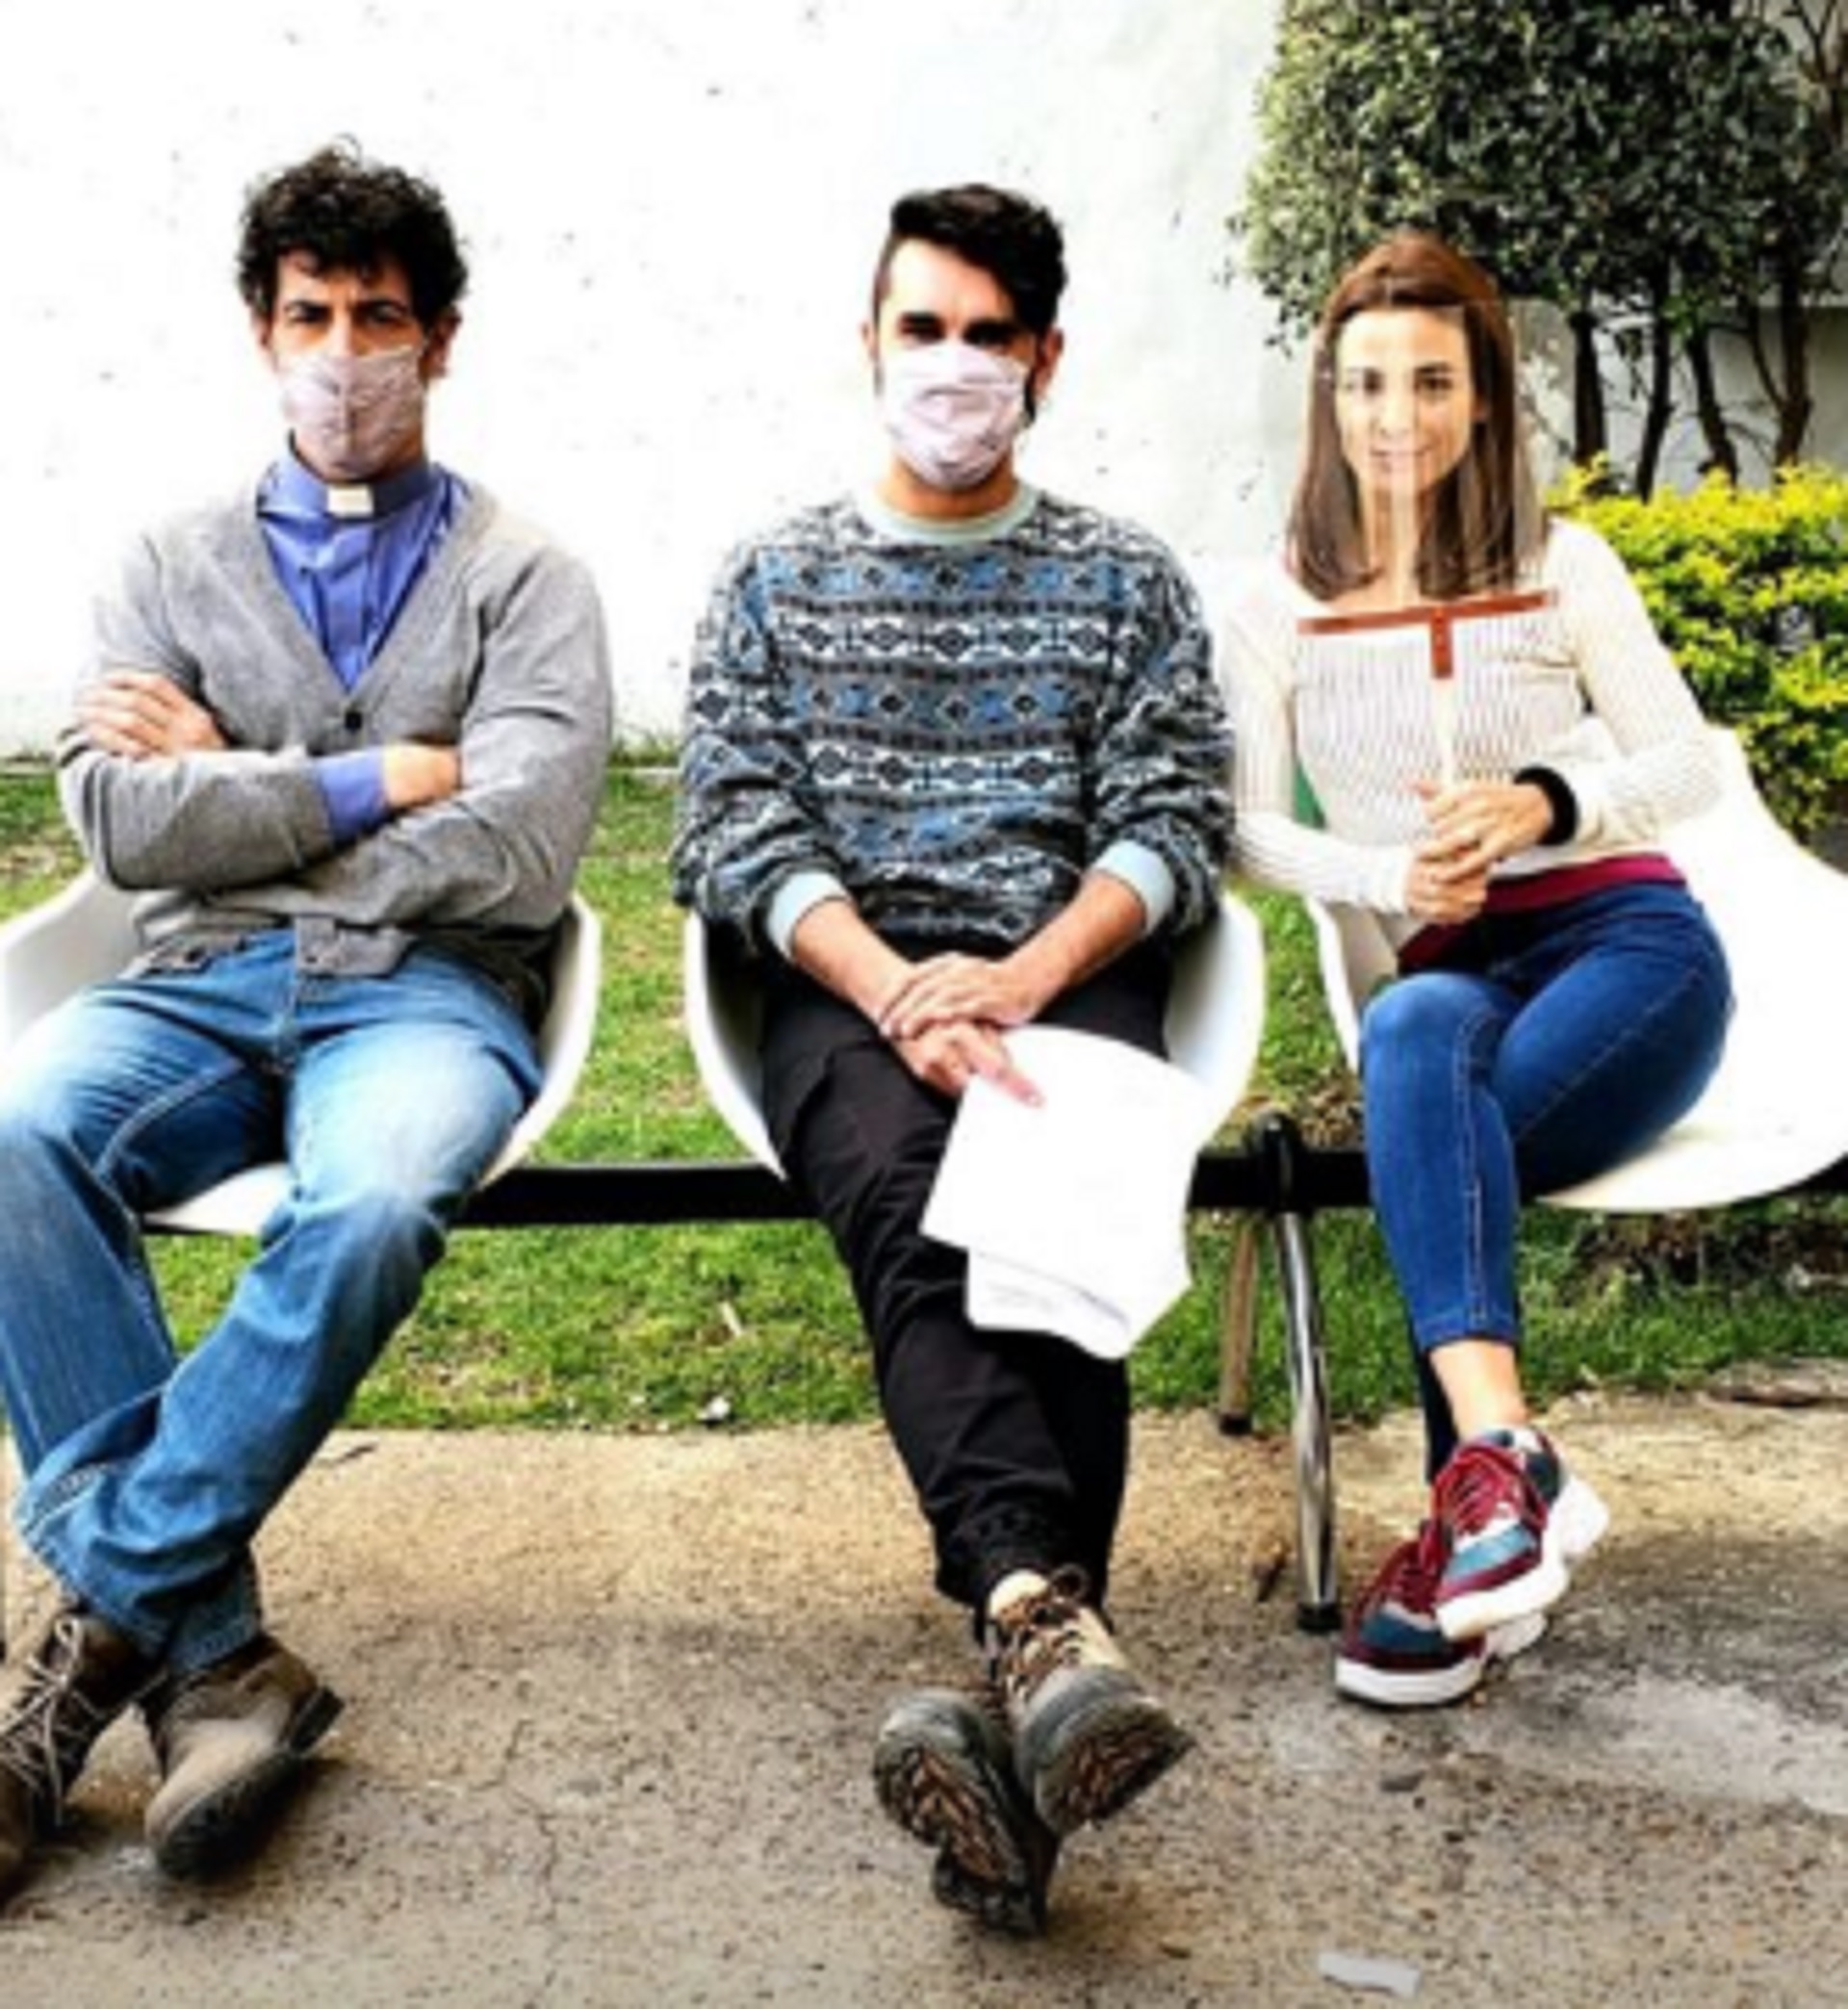 Esteban Lamothe, Gonzalo Heredia y Agustina Cherri, esperando para grabar, cumpliendo con los protocolos sanitarios